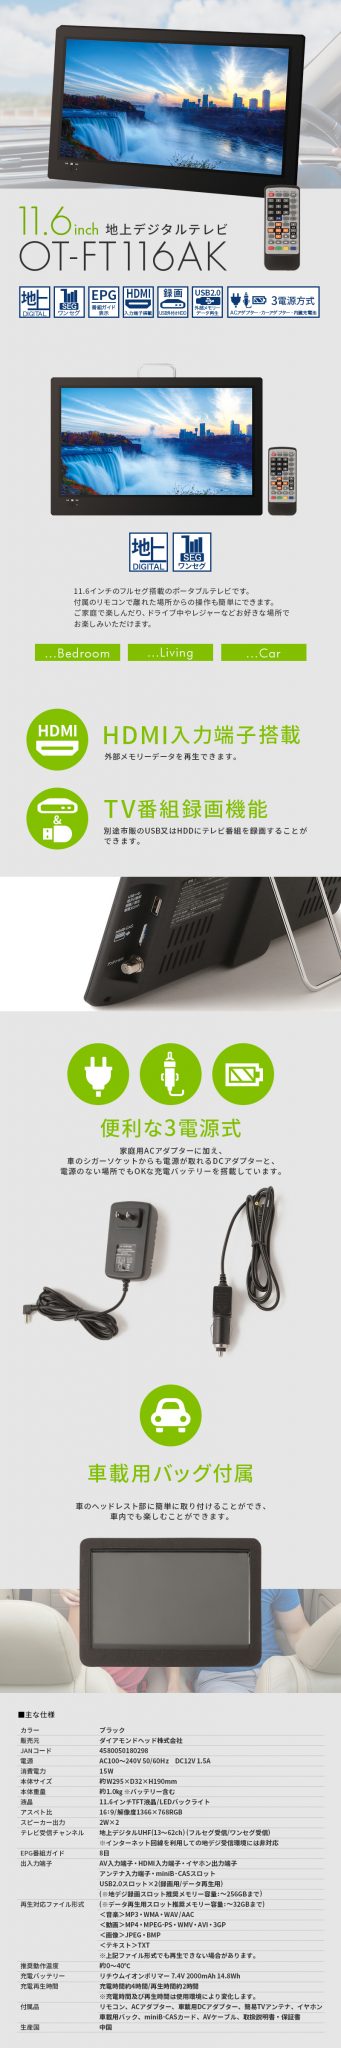 【新品未使用品】11.6インチ液晶 地上デジタル ポータブルTV